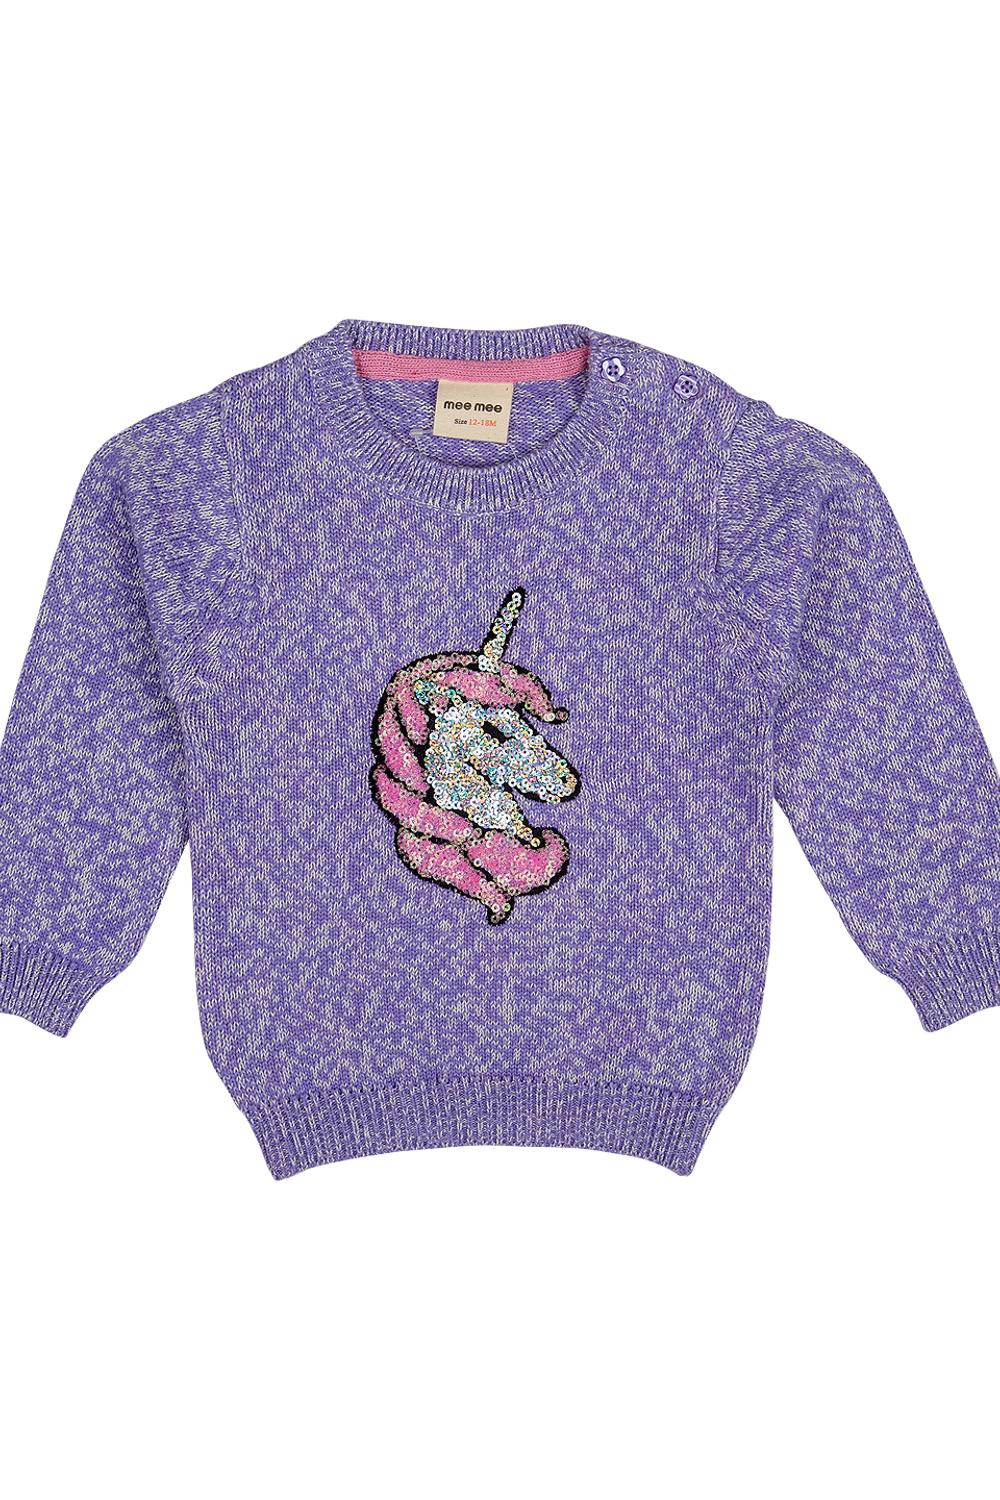 Mee Mee Girls Full sleeve Sweater - Lilac Melange